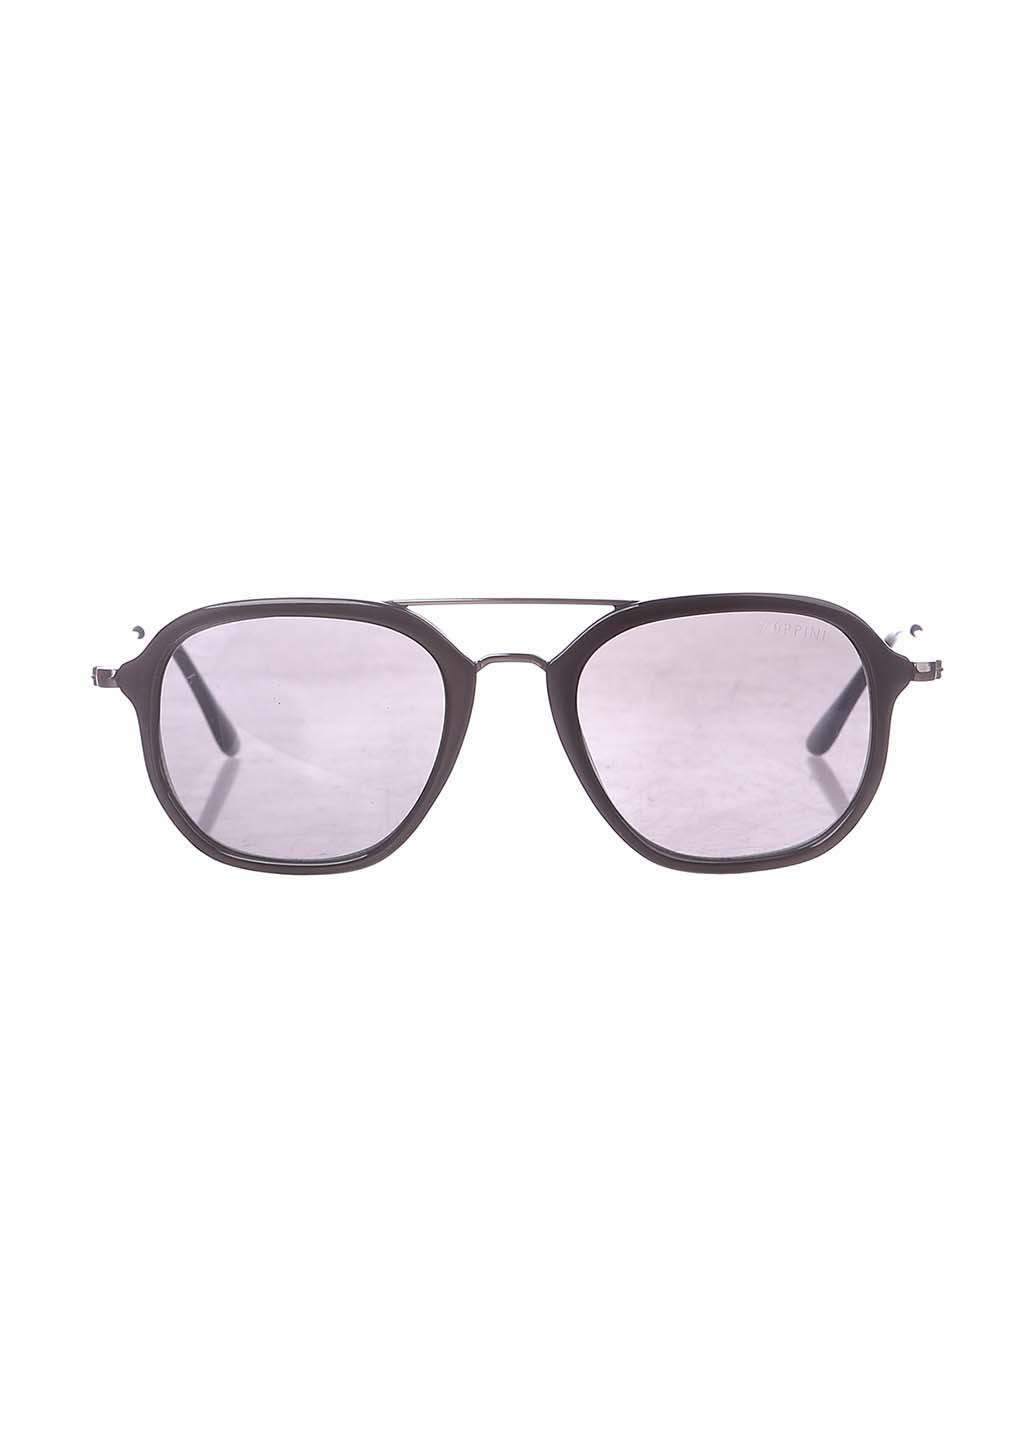 Мужские солнцезащитные очки Zoppini (258391549)